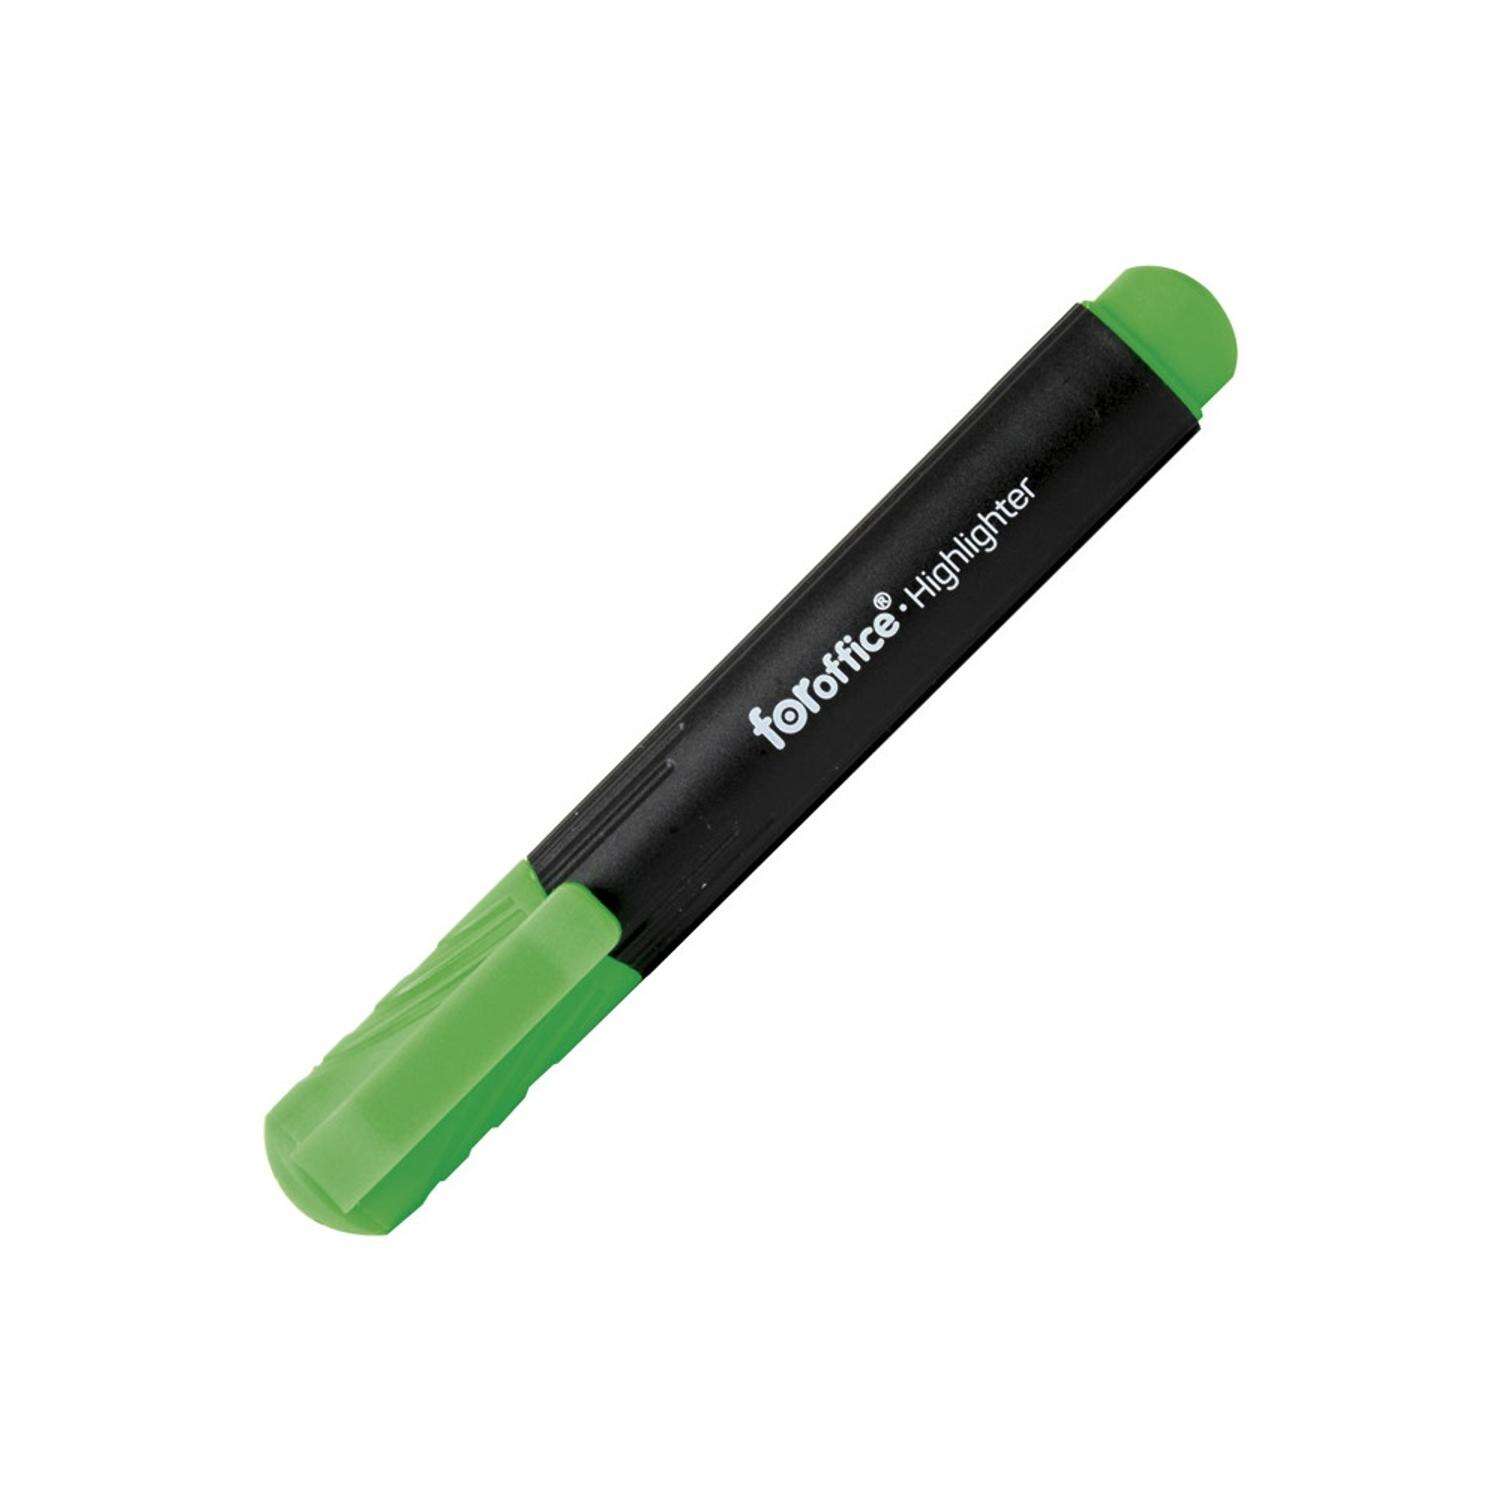 Szövegkiemelő 2-5mm, Foroffice zöld